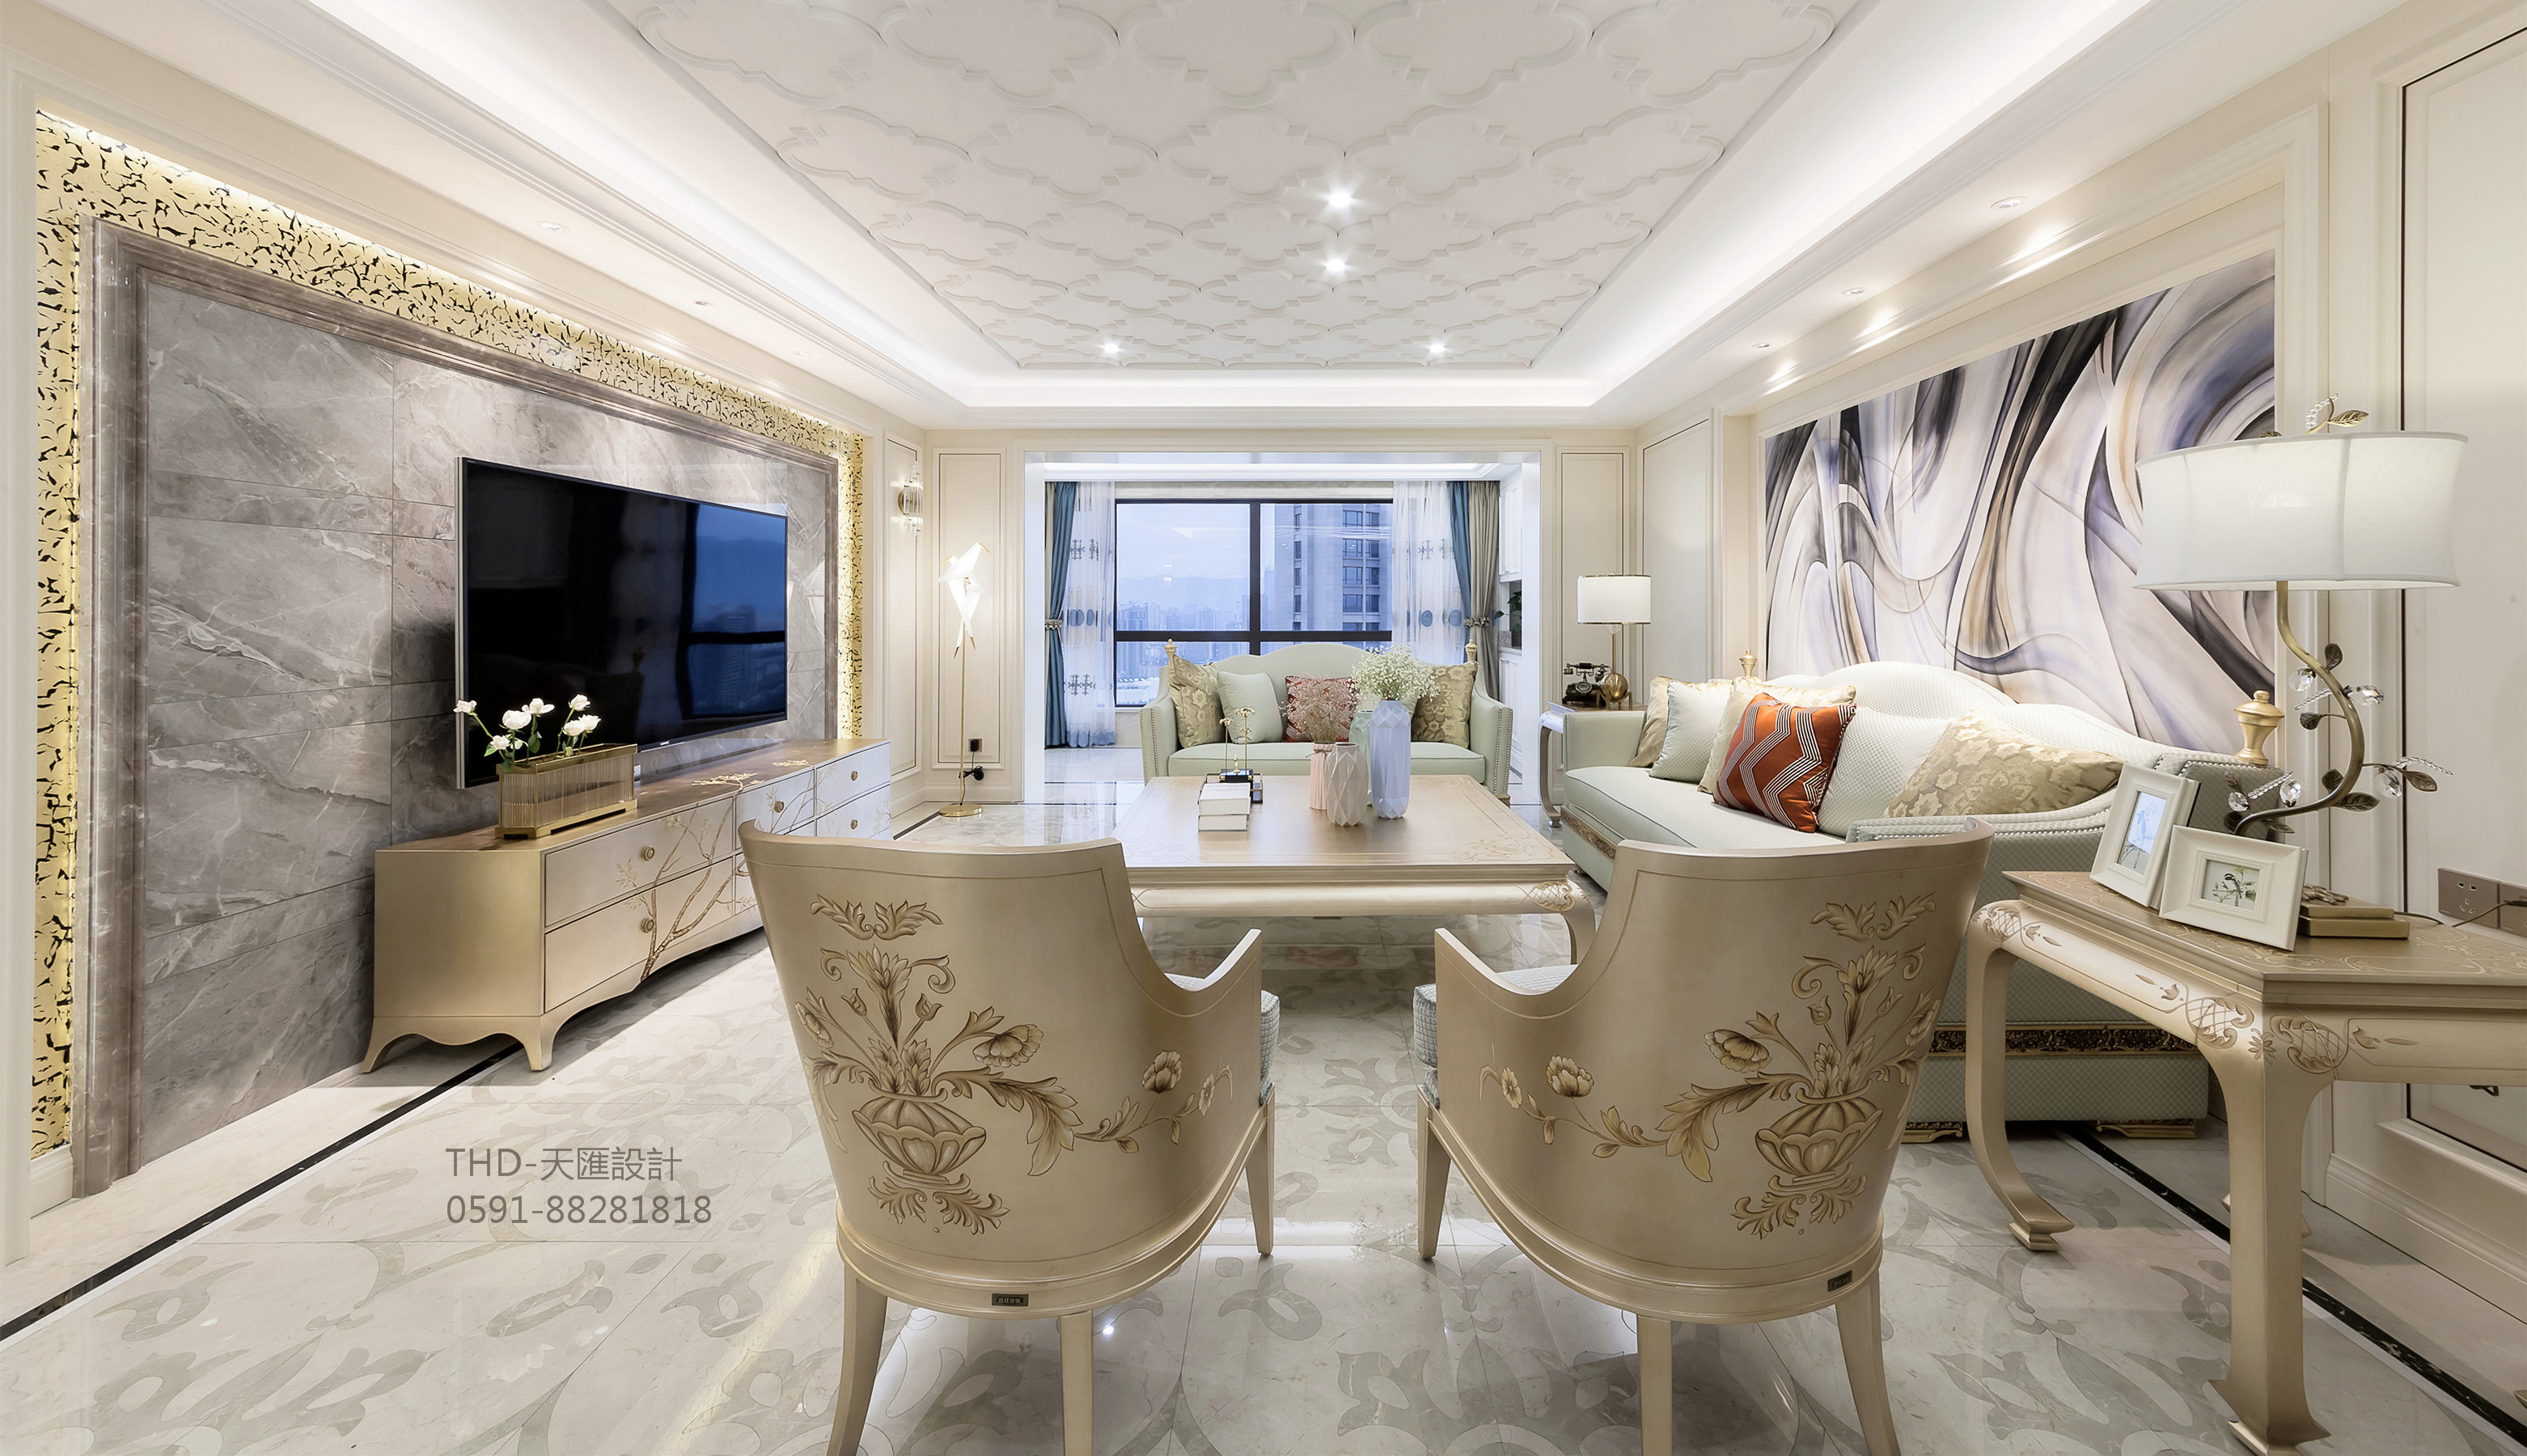 美式、法式 现代美式 简约美式 天汇设计 游小华 欧式客厅 客厅图片来自游小华在法式轻奢《White Rose》的分享